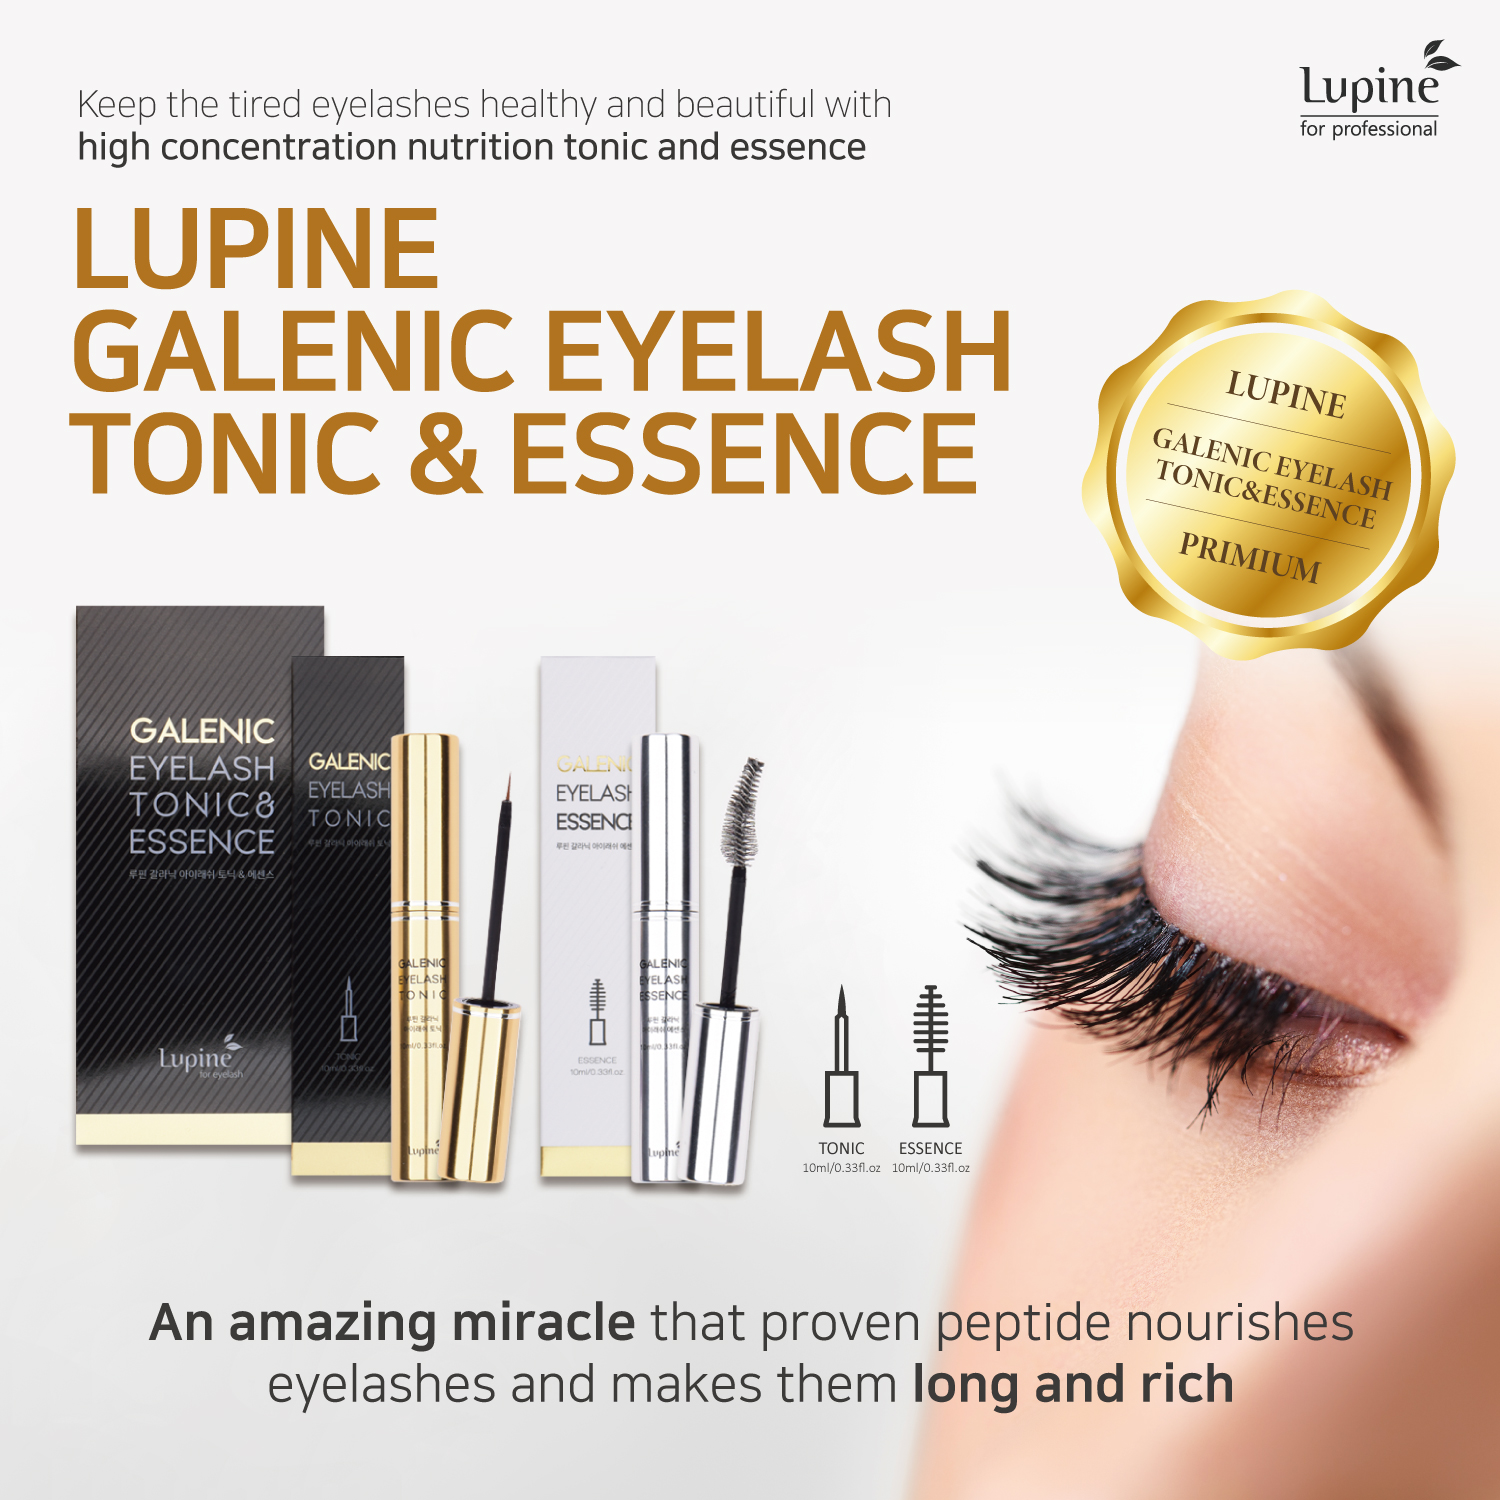 GALENIC eyelash tonic